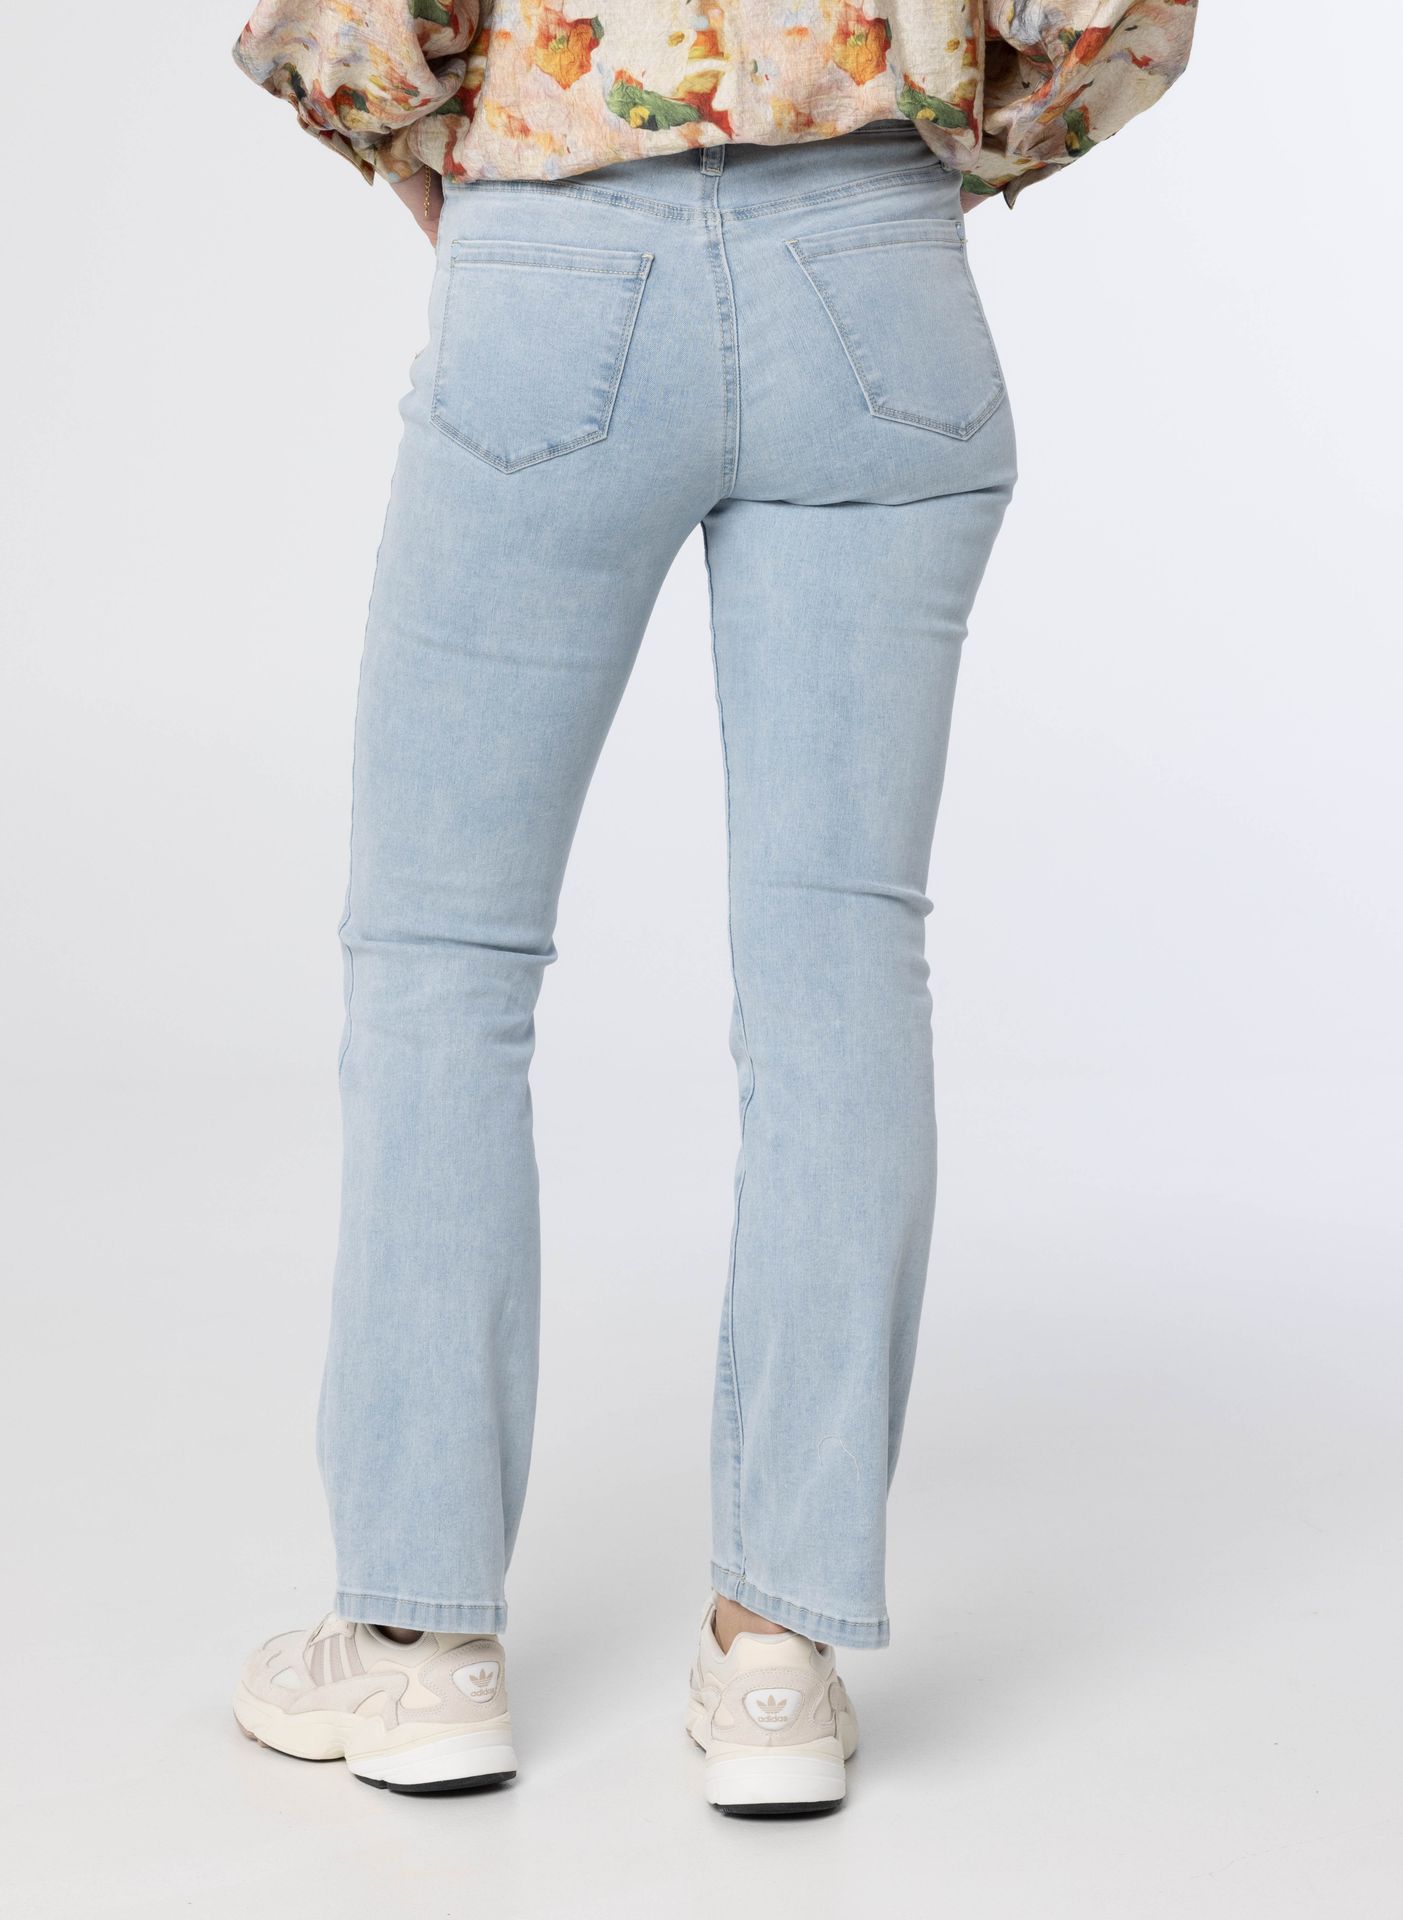 Norah Lichtblauwe rechte denim jeans light blue 213480-401